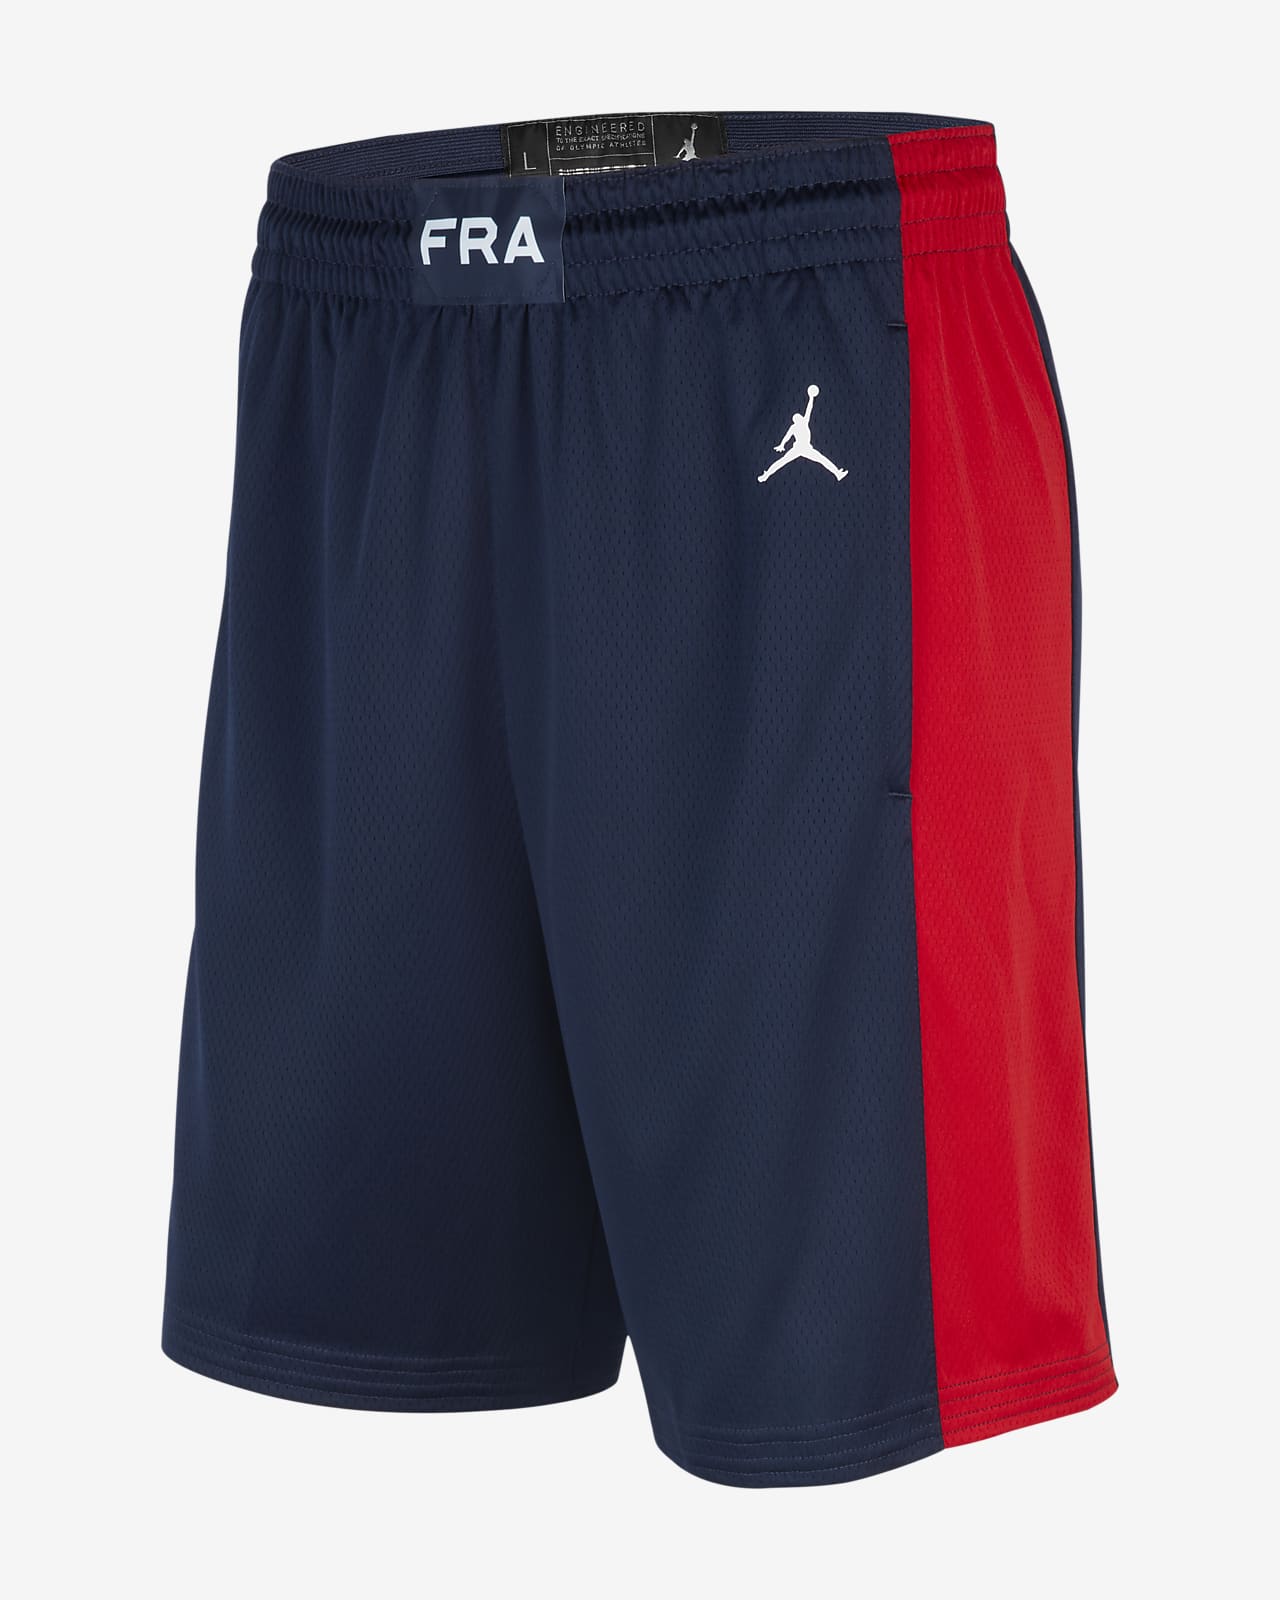 Basketshorts France Jordan (Road) Limited för män